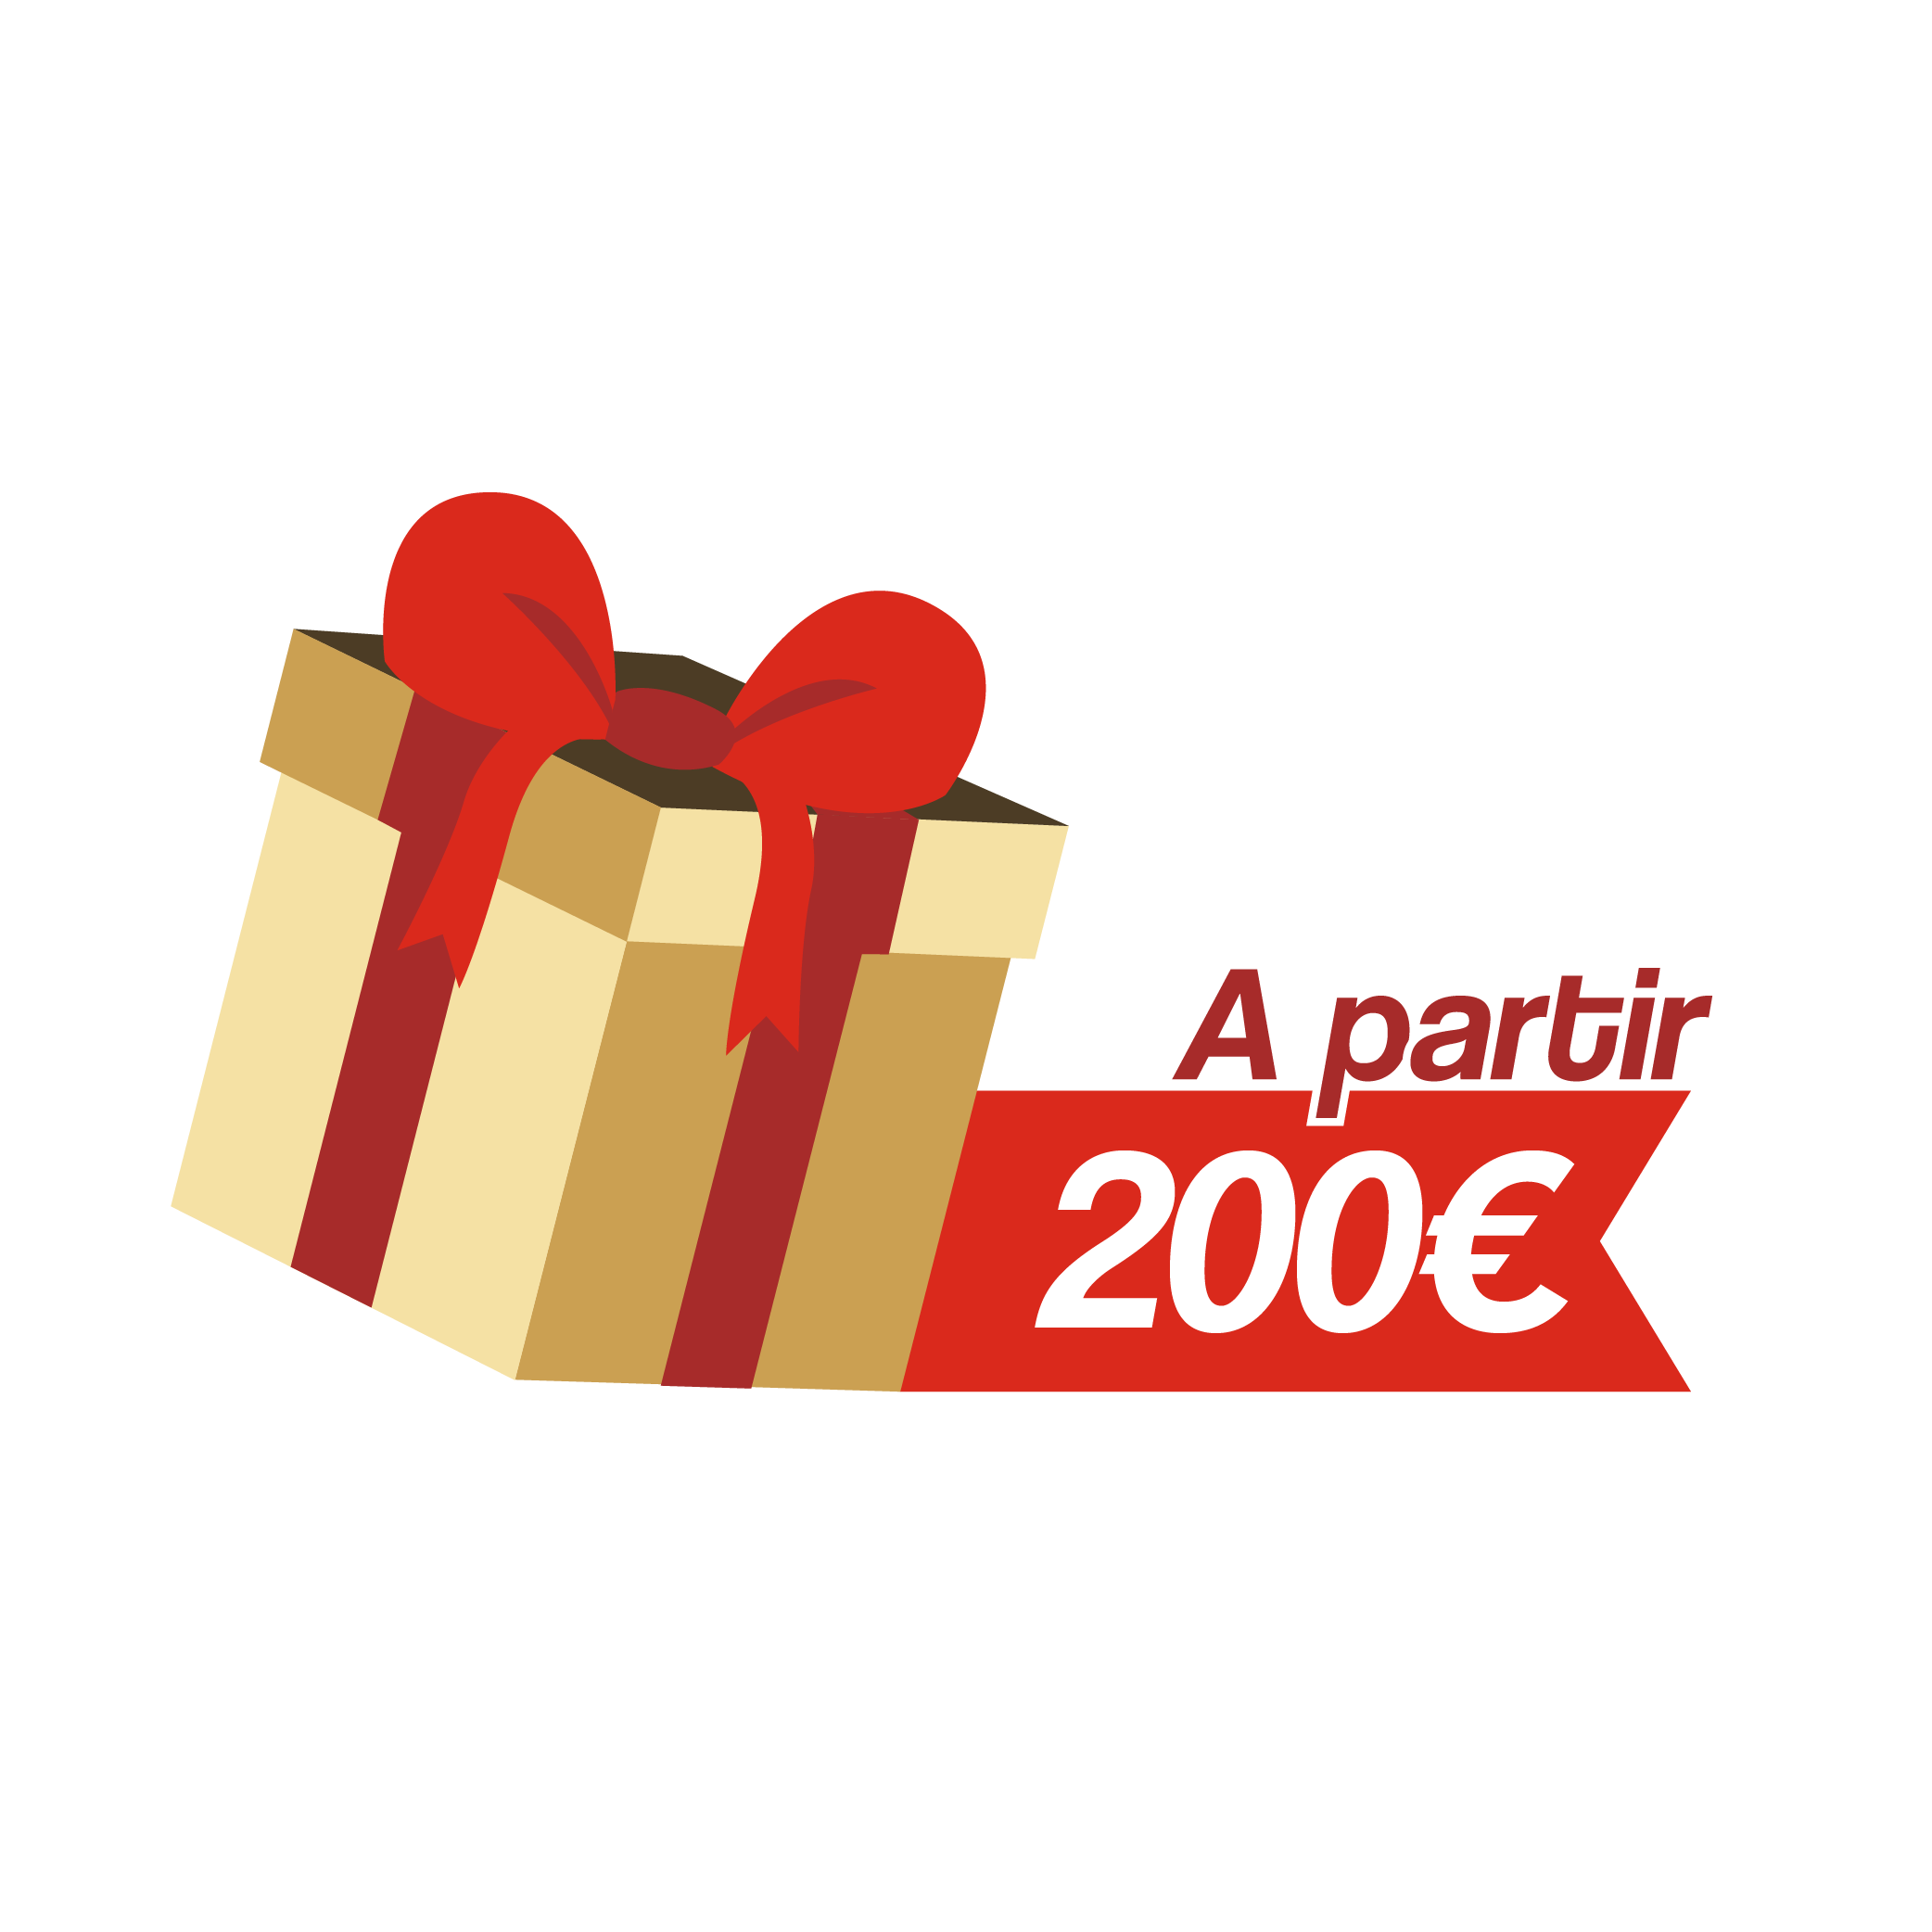 Regalos de navidad de más de 200 euros